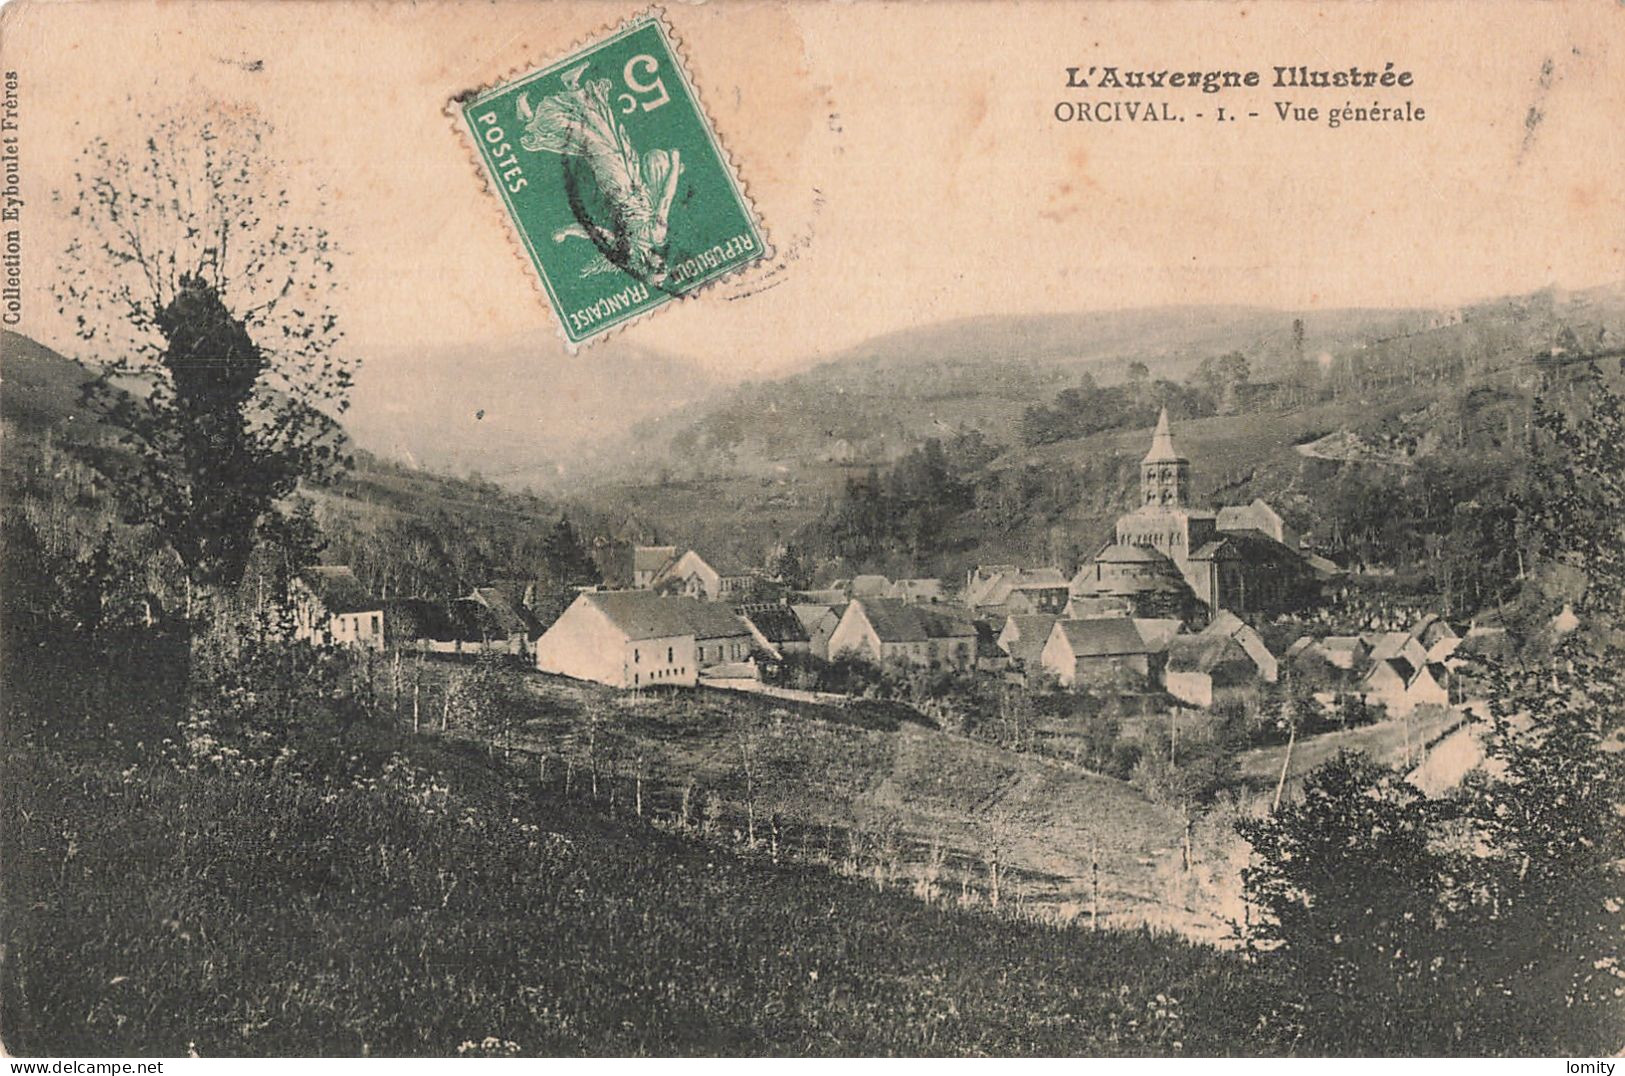 Destockage lot de 32 cartes postales CPA Auvergne Clermont Ferrand la Bourboule Royat Chatelguyon Mont Dore